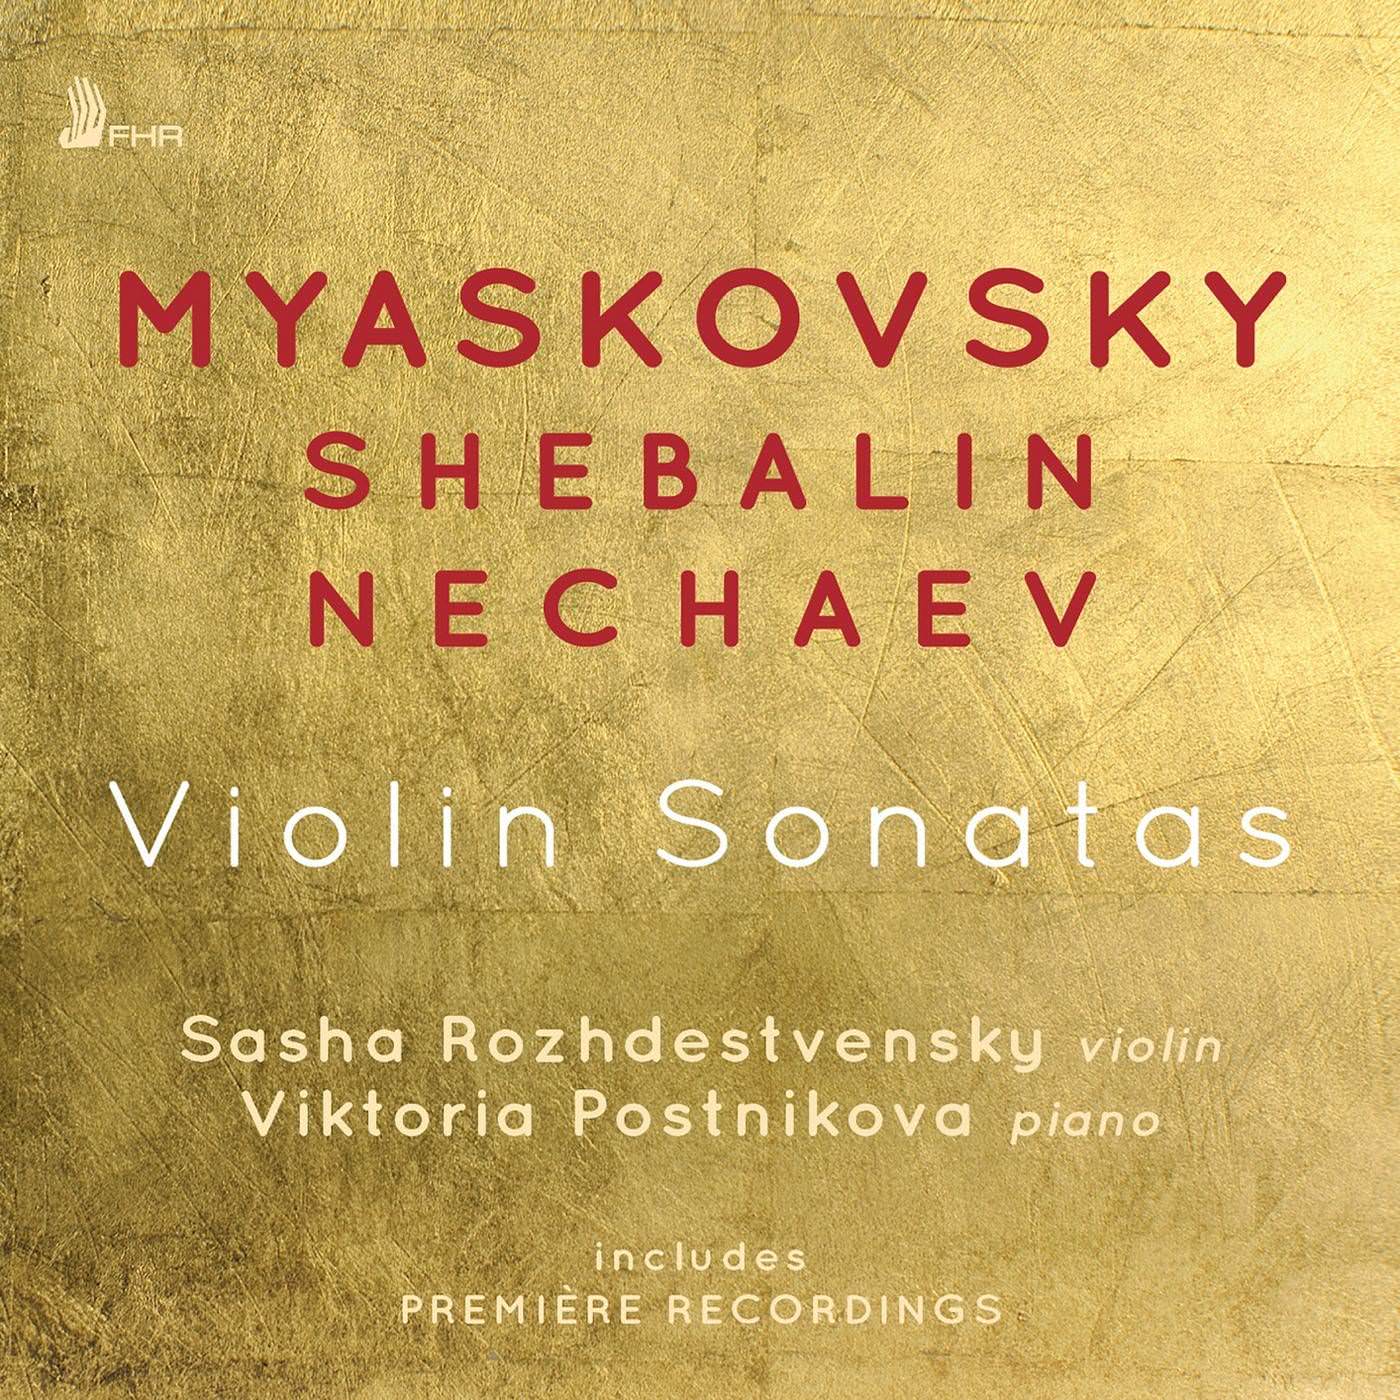 Sasha Rozhdestvensky & Viktoria Postnikova - Myaskovsky, Shebalin & Nechaev: Violin Sonatas (2018) [FLAC 24bit/96kHz]